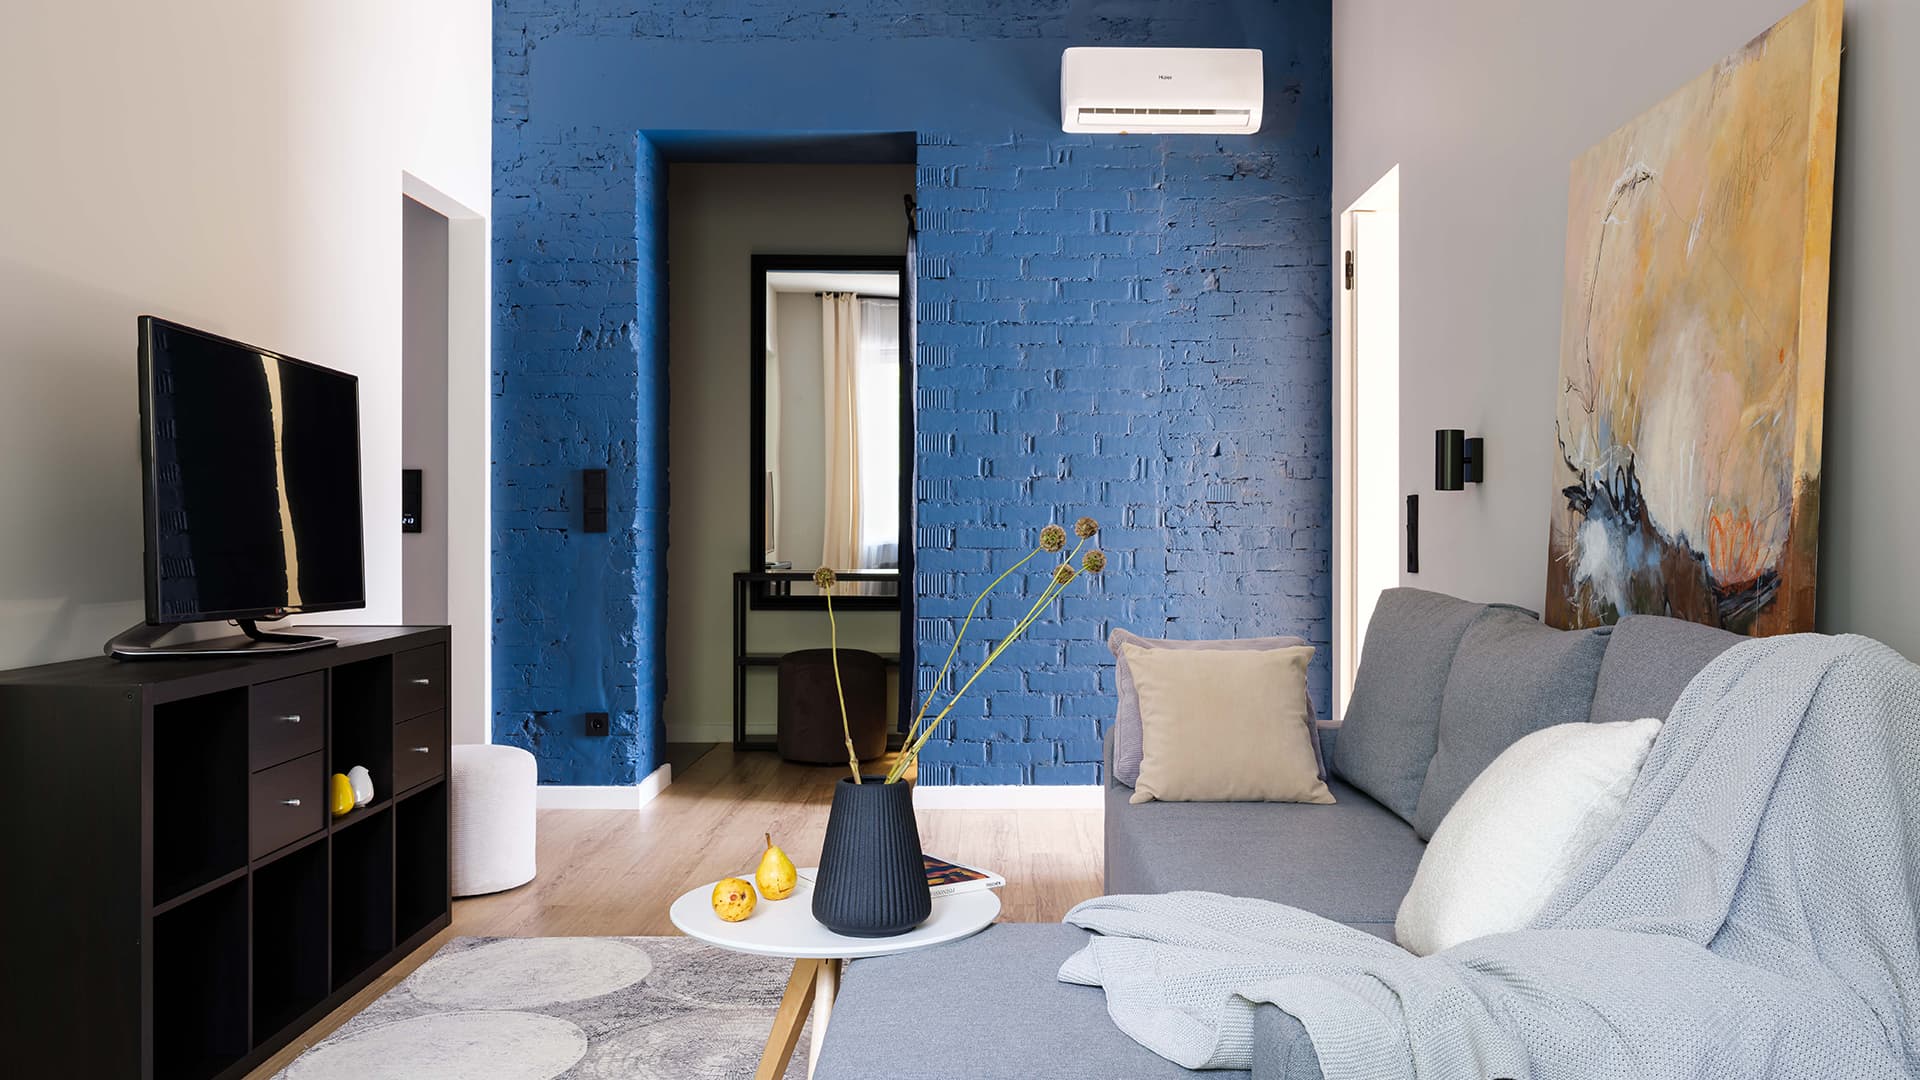 Уютный интерьер с доминирующим синим цветом – проект бюро Archistories